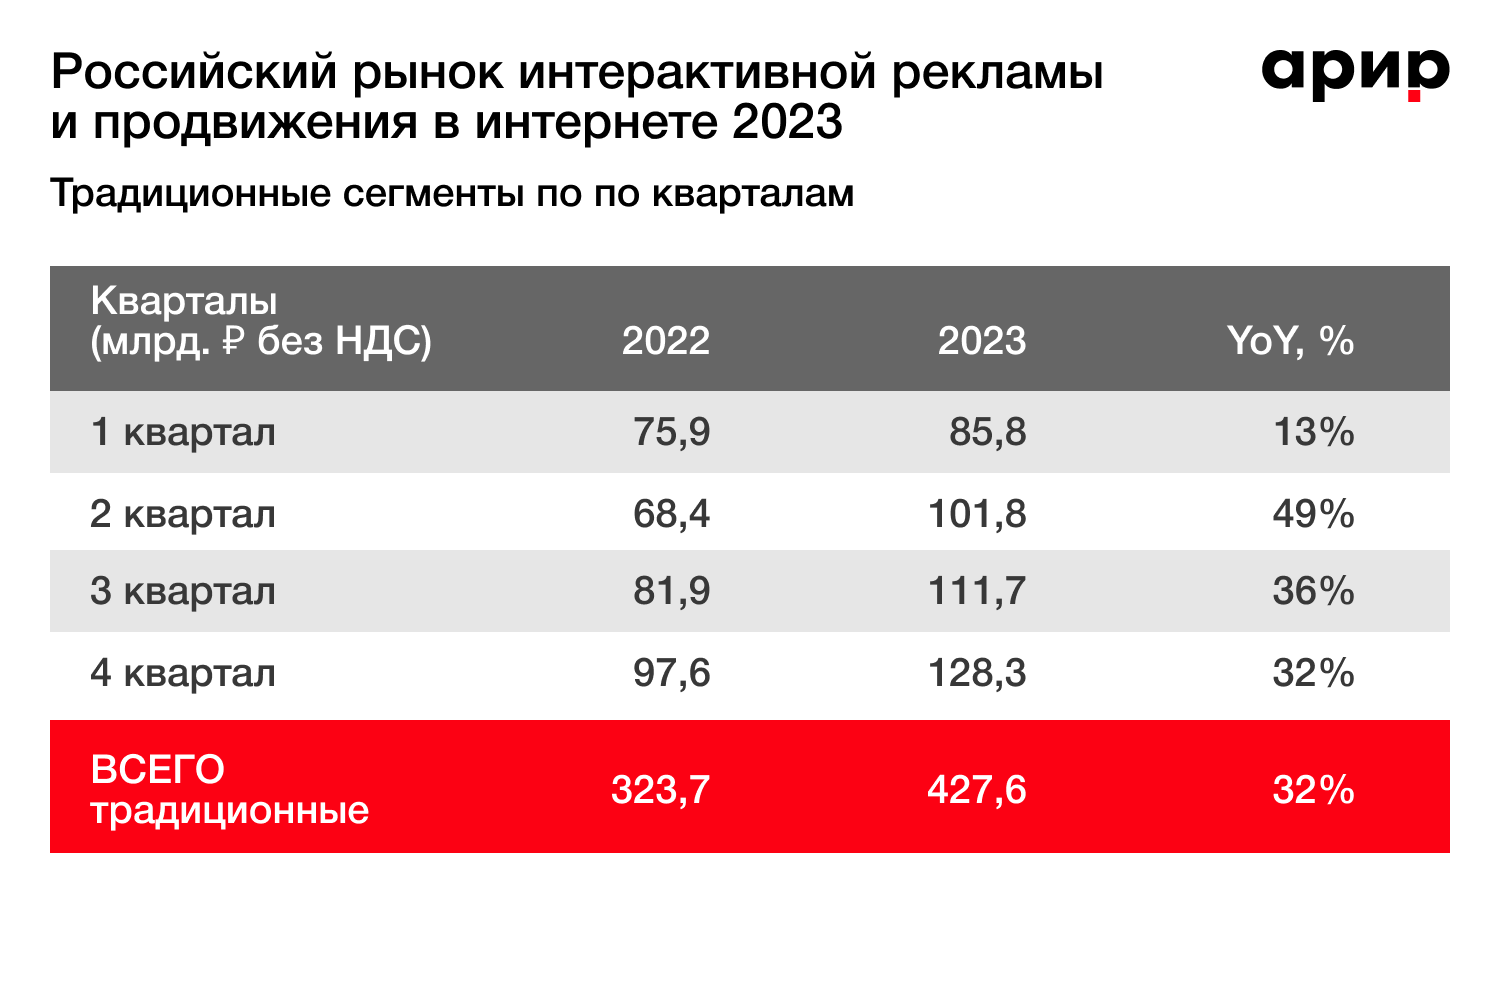 ВИРИР: объем российского рынка интерактивной рекламы и продвижения в Интернете в 2023 году увеличился на 55% | Новости